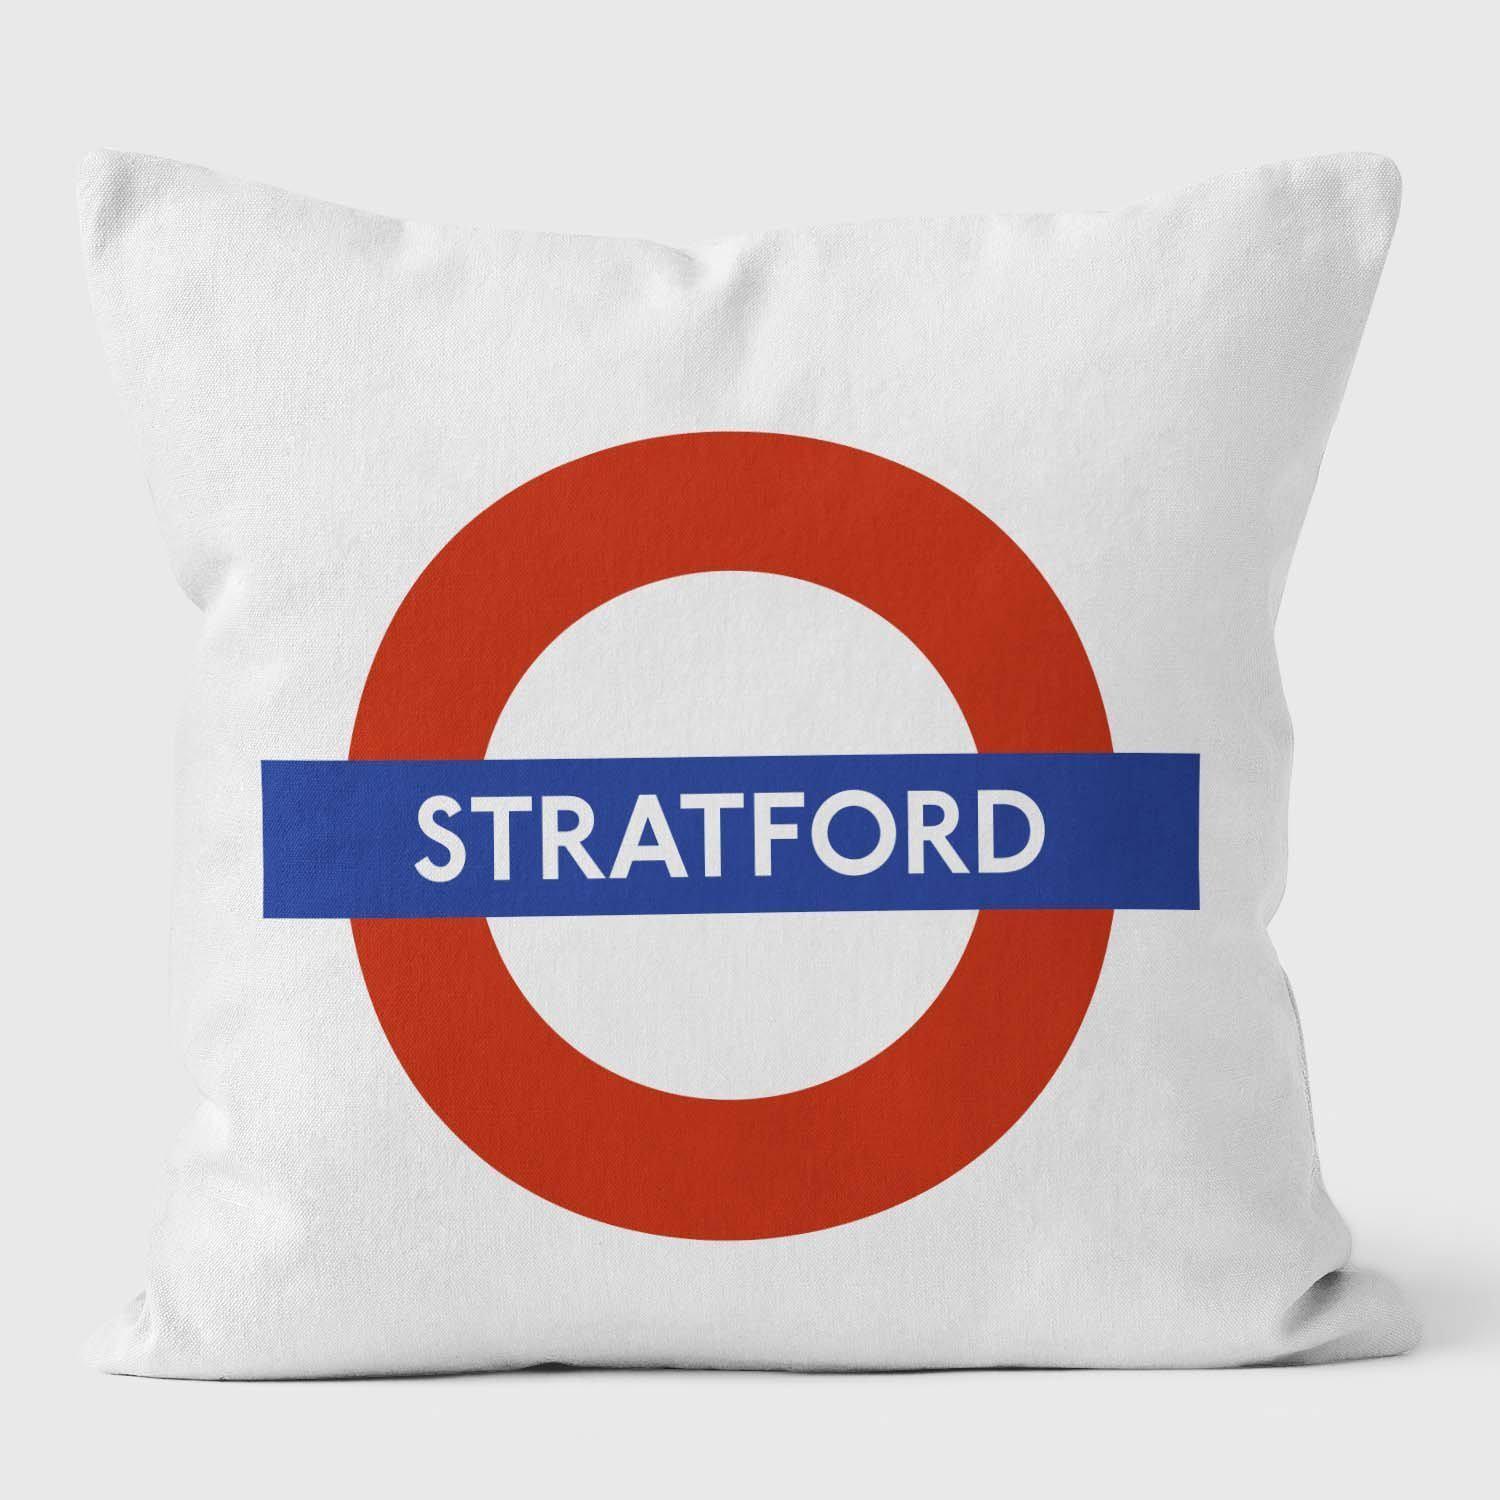 Stratford London Underground Tube Station Roundel Cushion - Handmade Cushions UK - WeLoveCushions